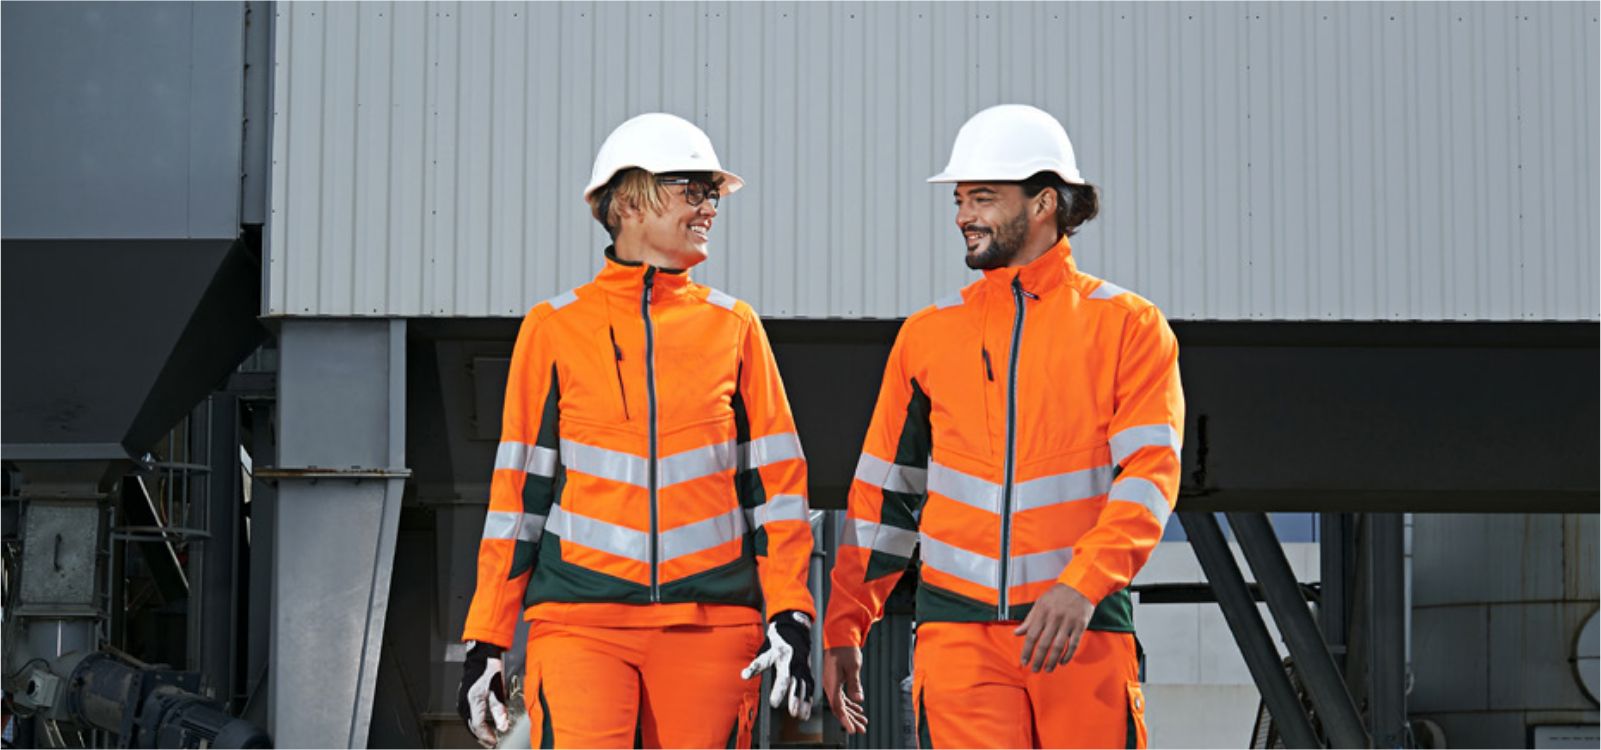 Männliche und weibliche Person, die auf die Kamera frontal zulaufen und orange-smaragd-farbene Warnschutzkleidung und weiße Helme tragen